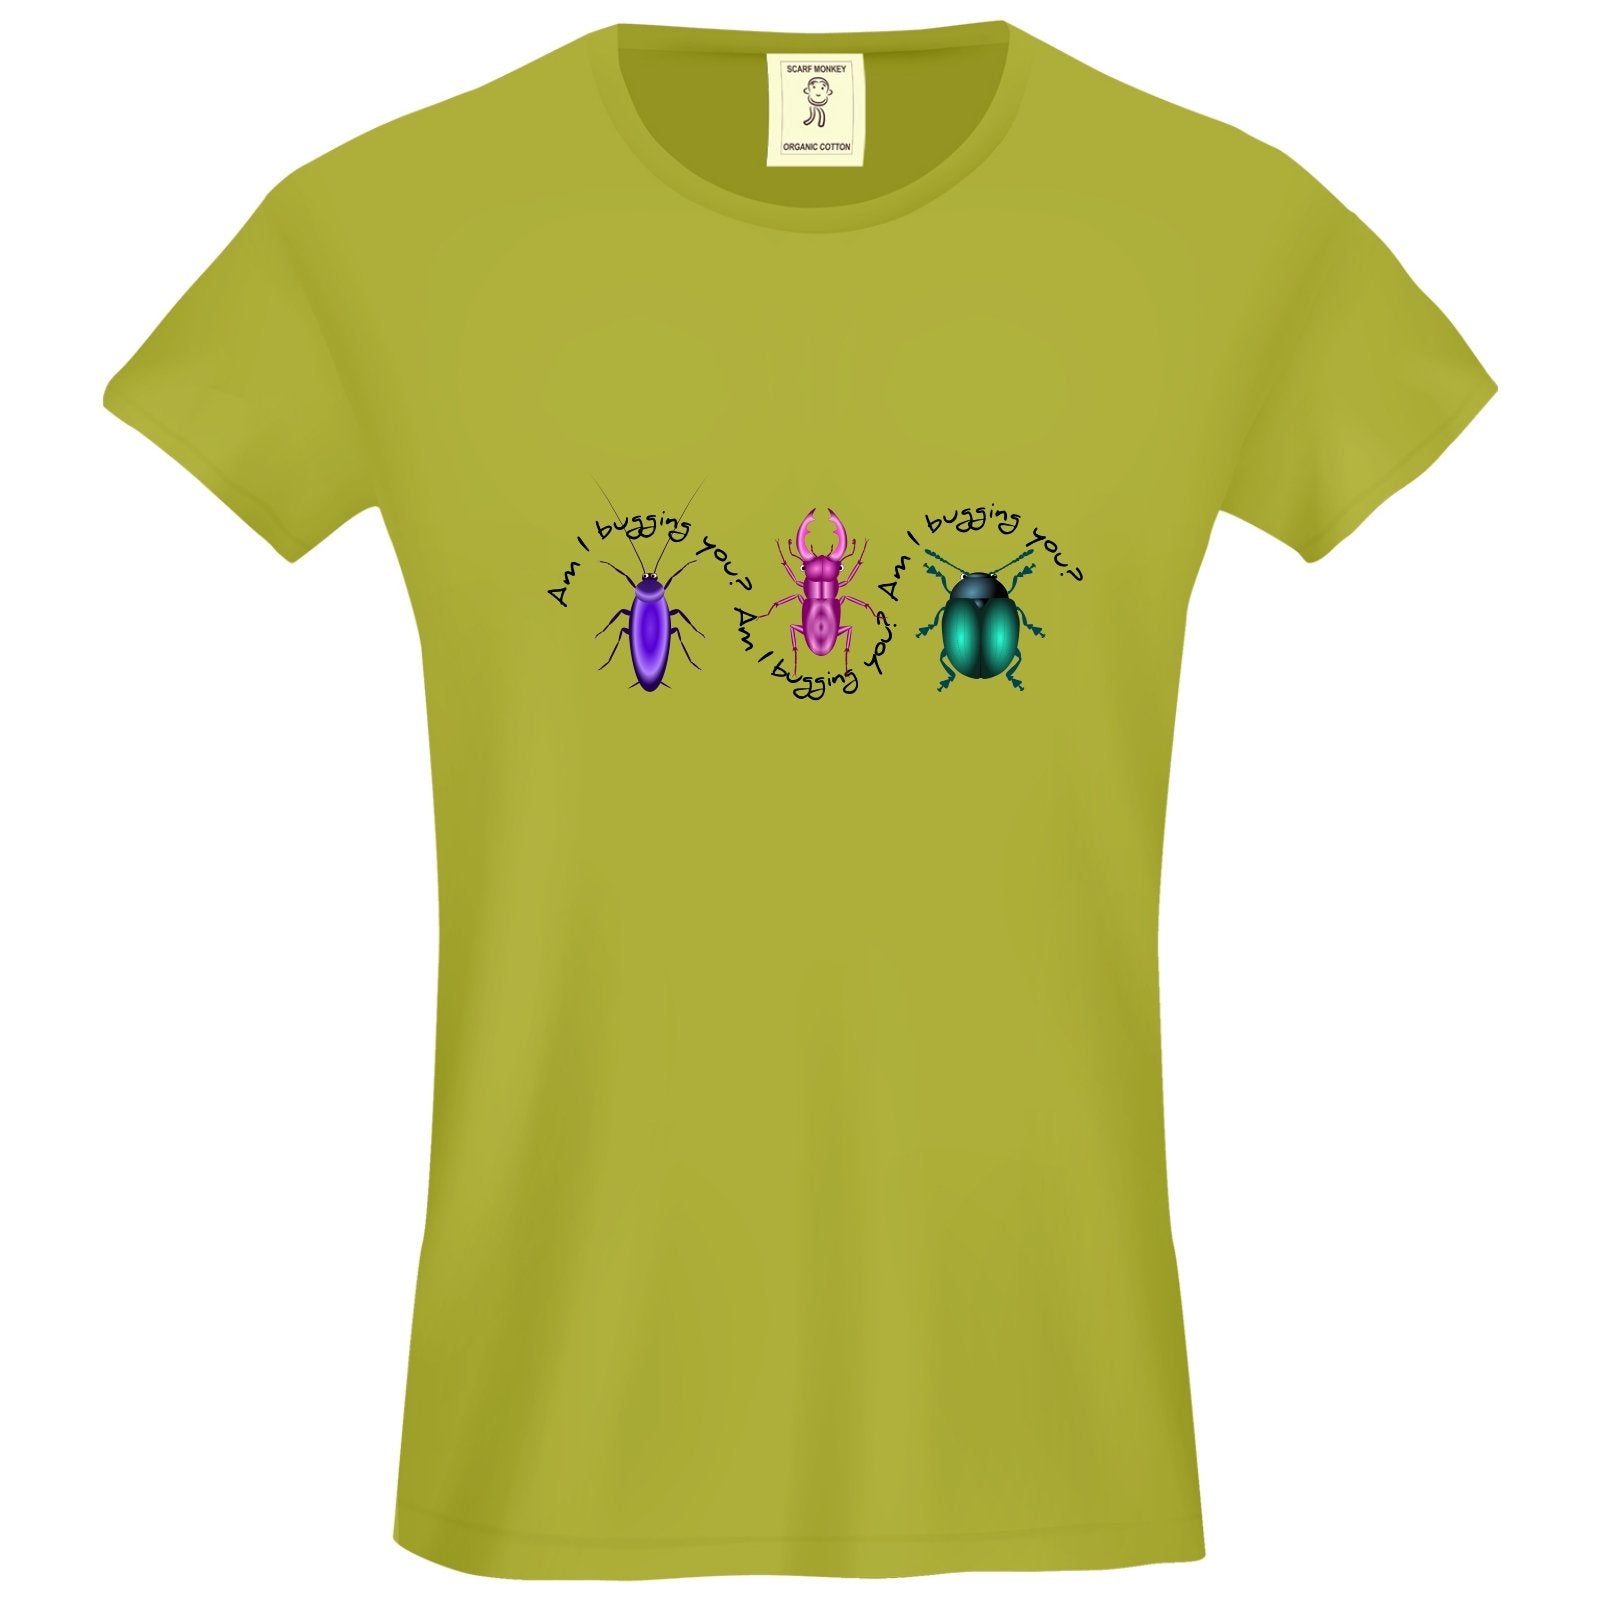 Am I Bugging You? Organic Cotton Girls T-Shirt - Scarf Monkey